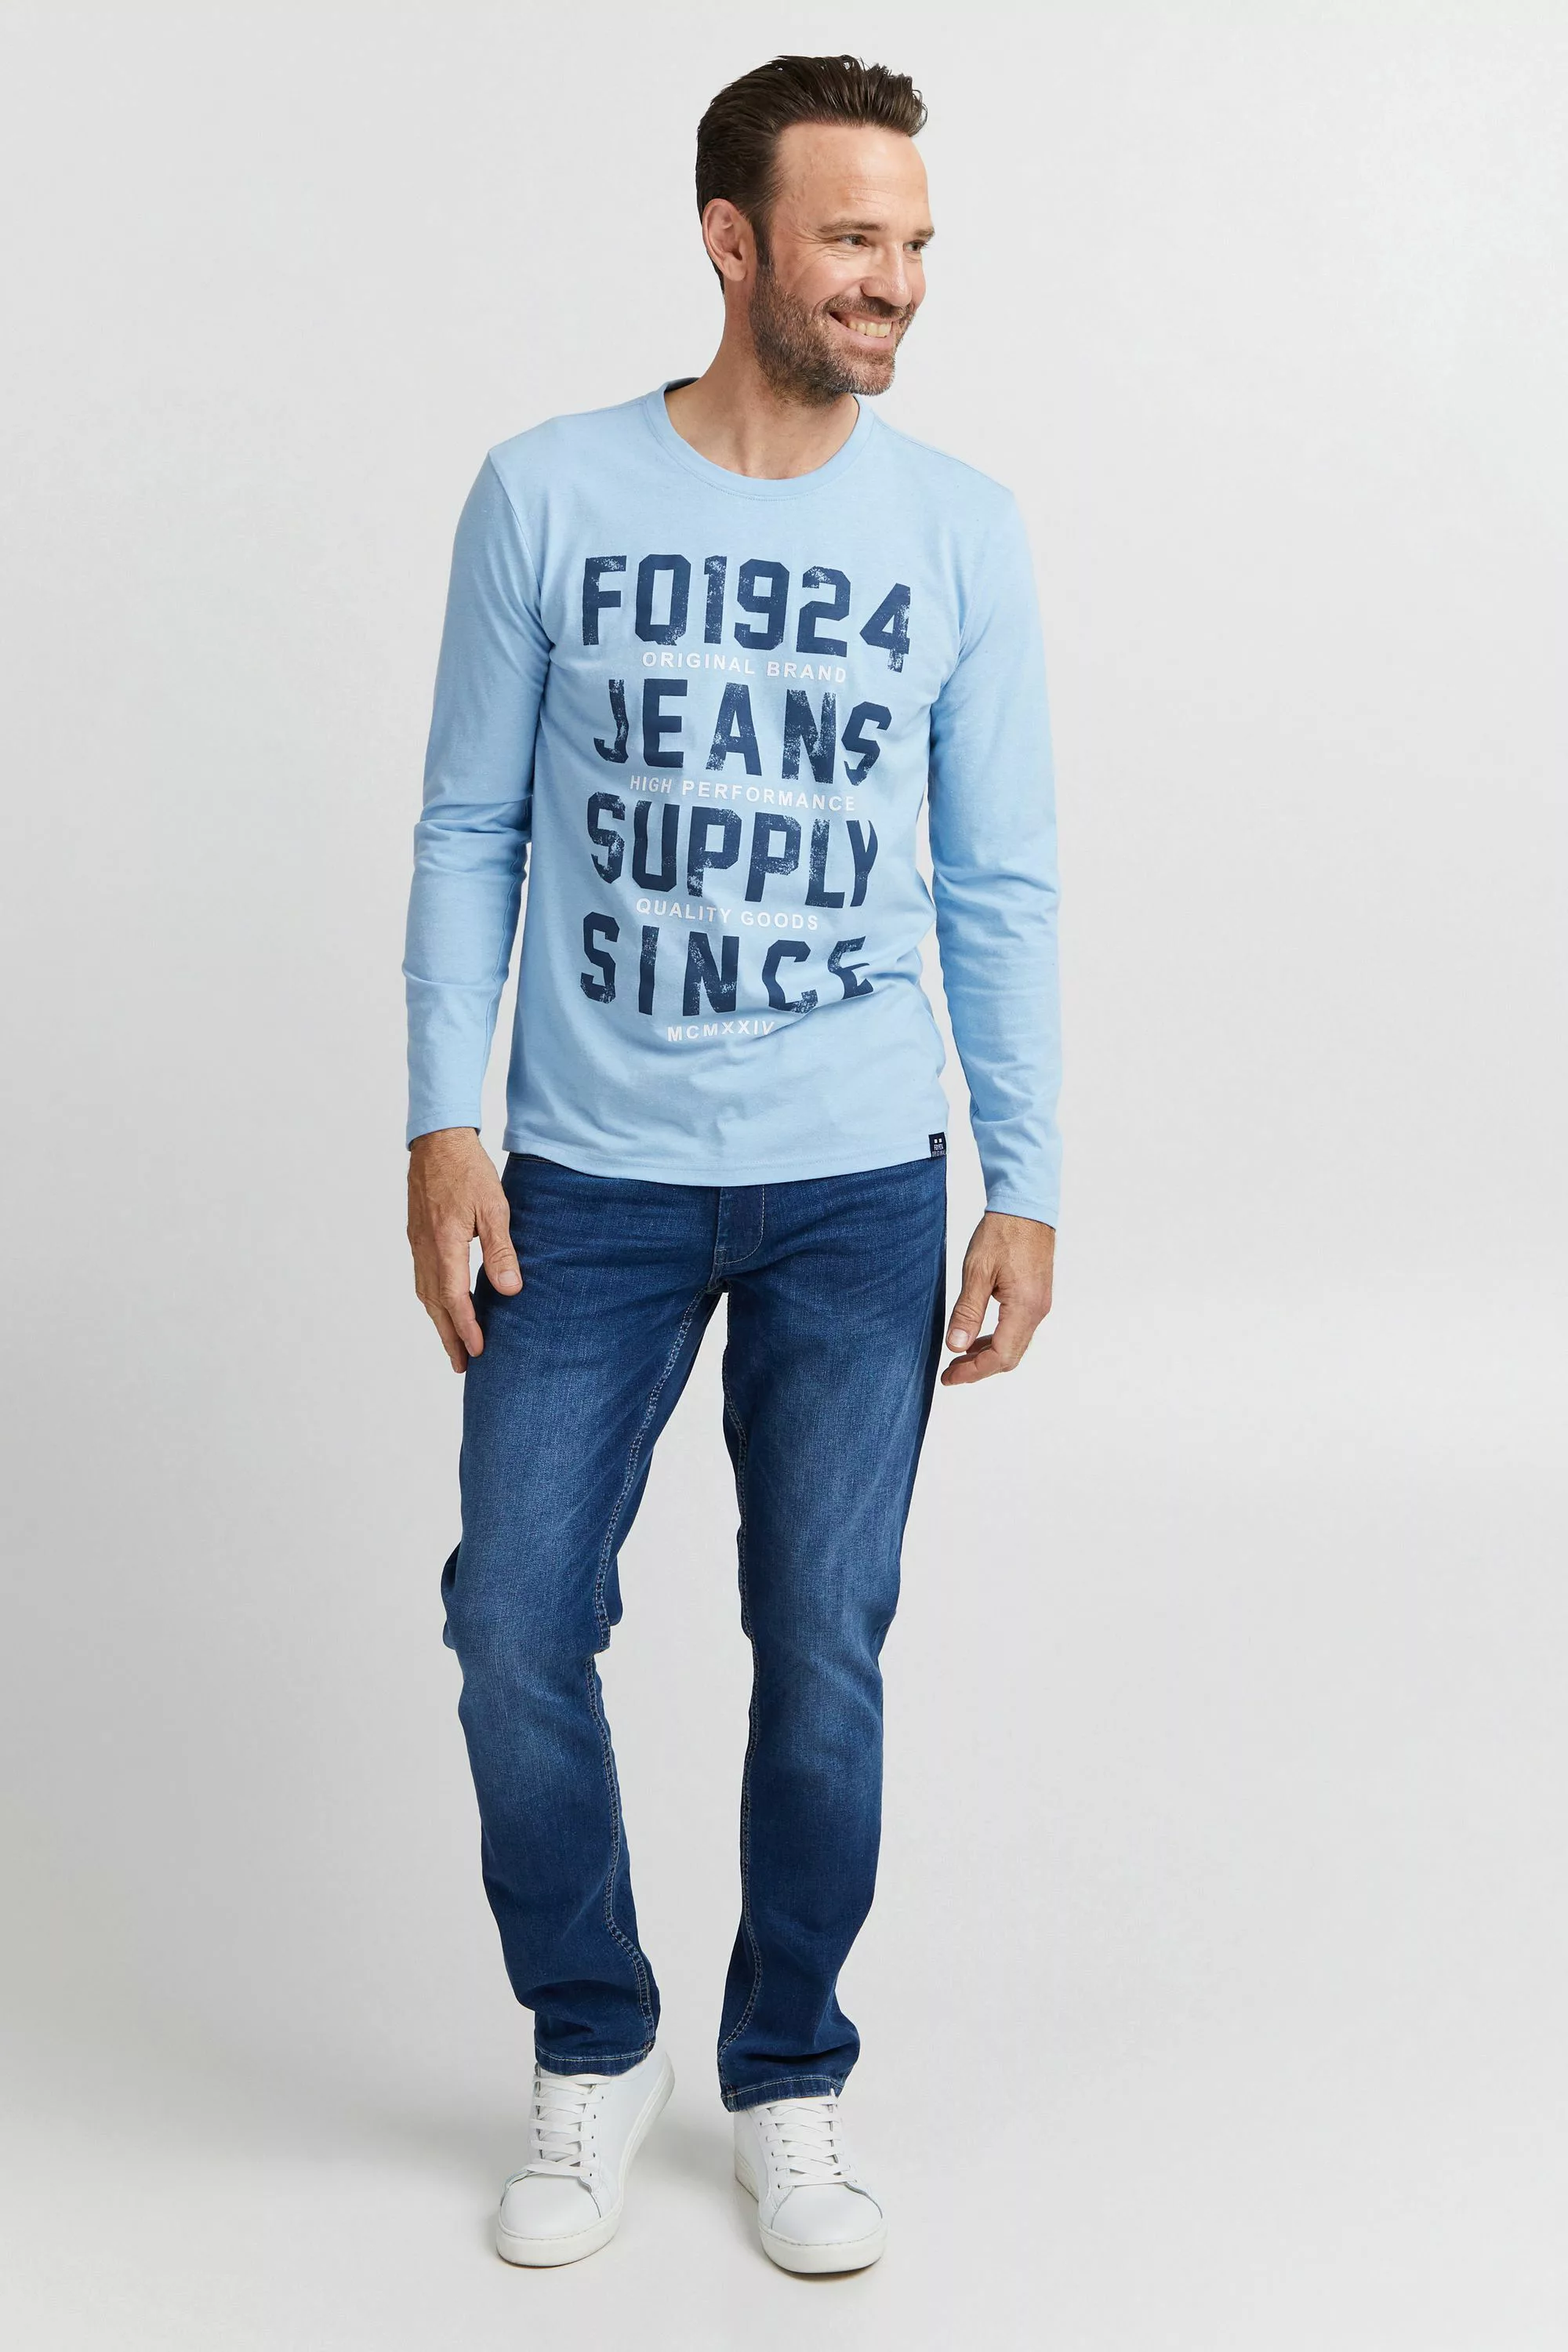 FQ1924 5-Pocket-Jeans "FQ1924 FQROMAN" günstig online kaufen